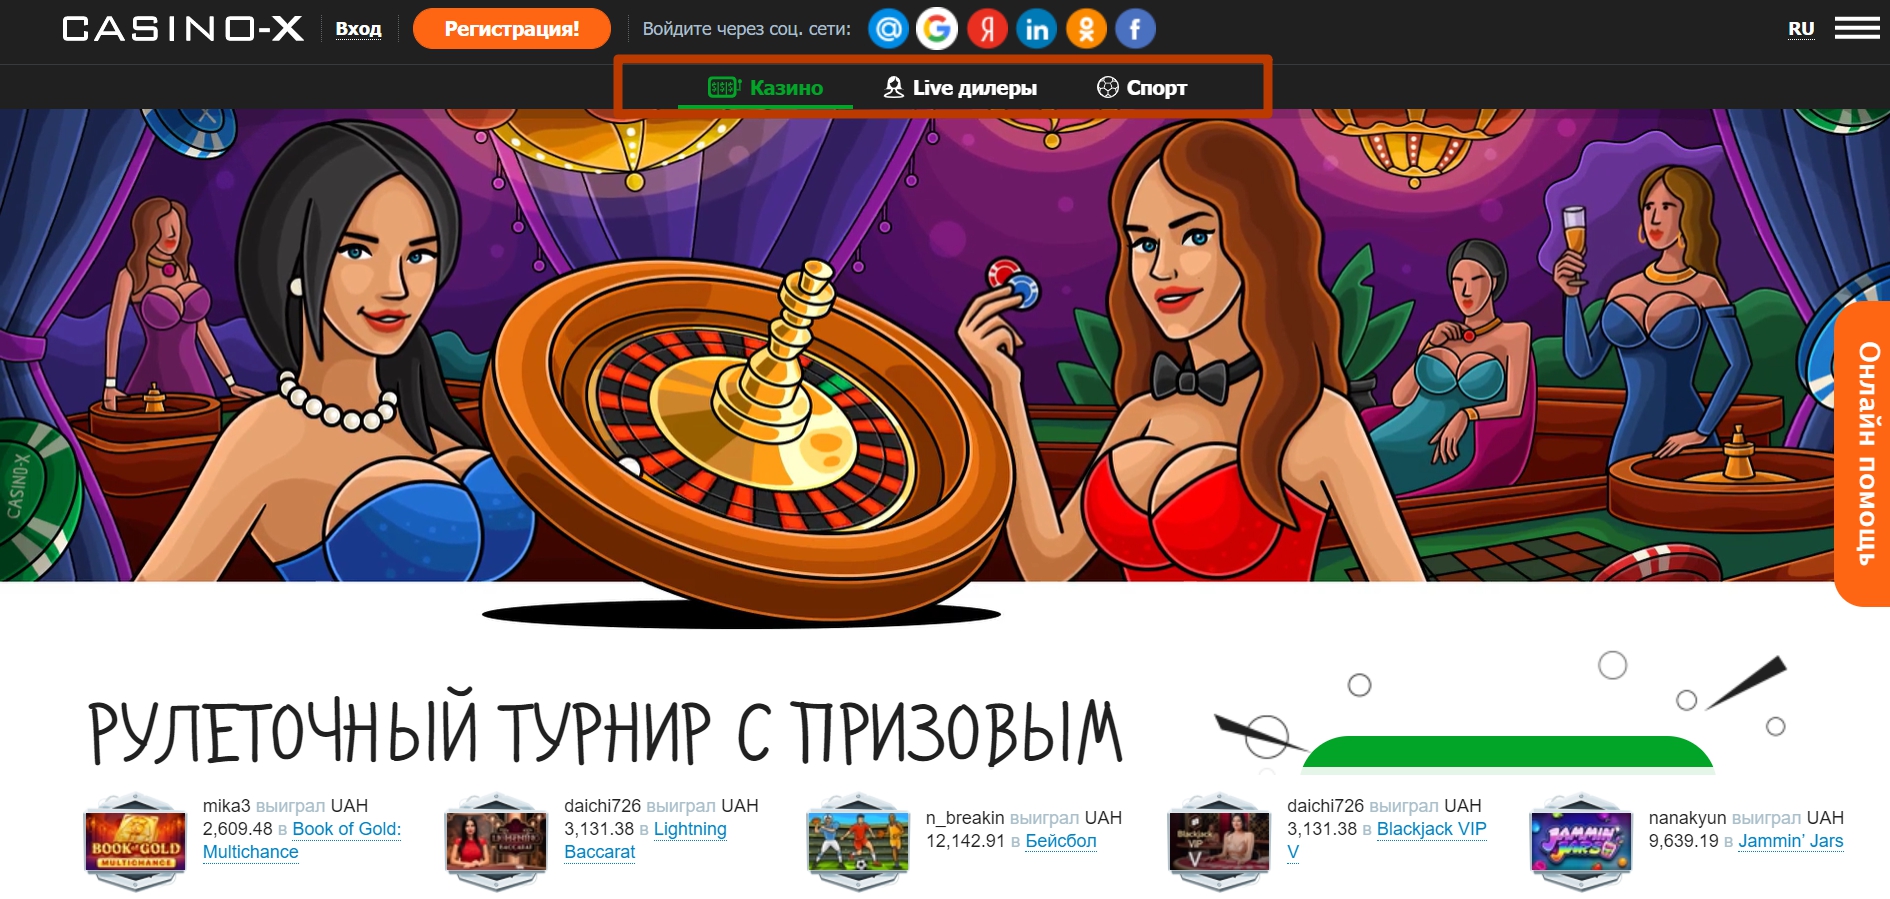 Casino x полная версия россия x2021 ru слоты игровых автоматов играть